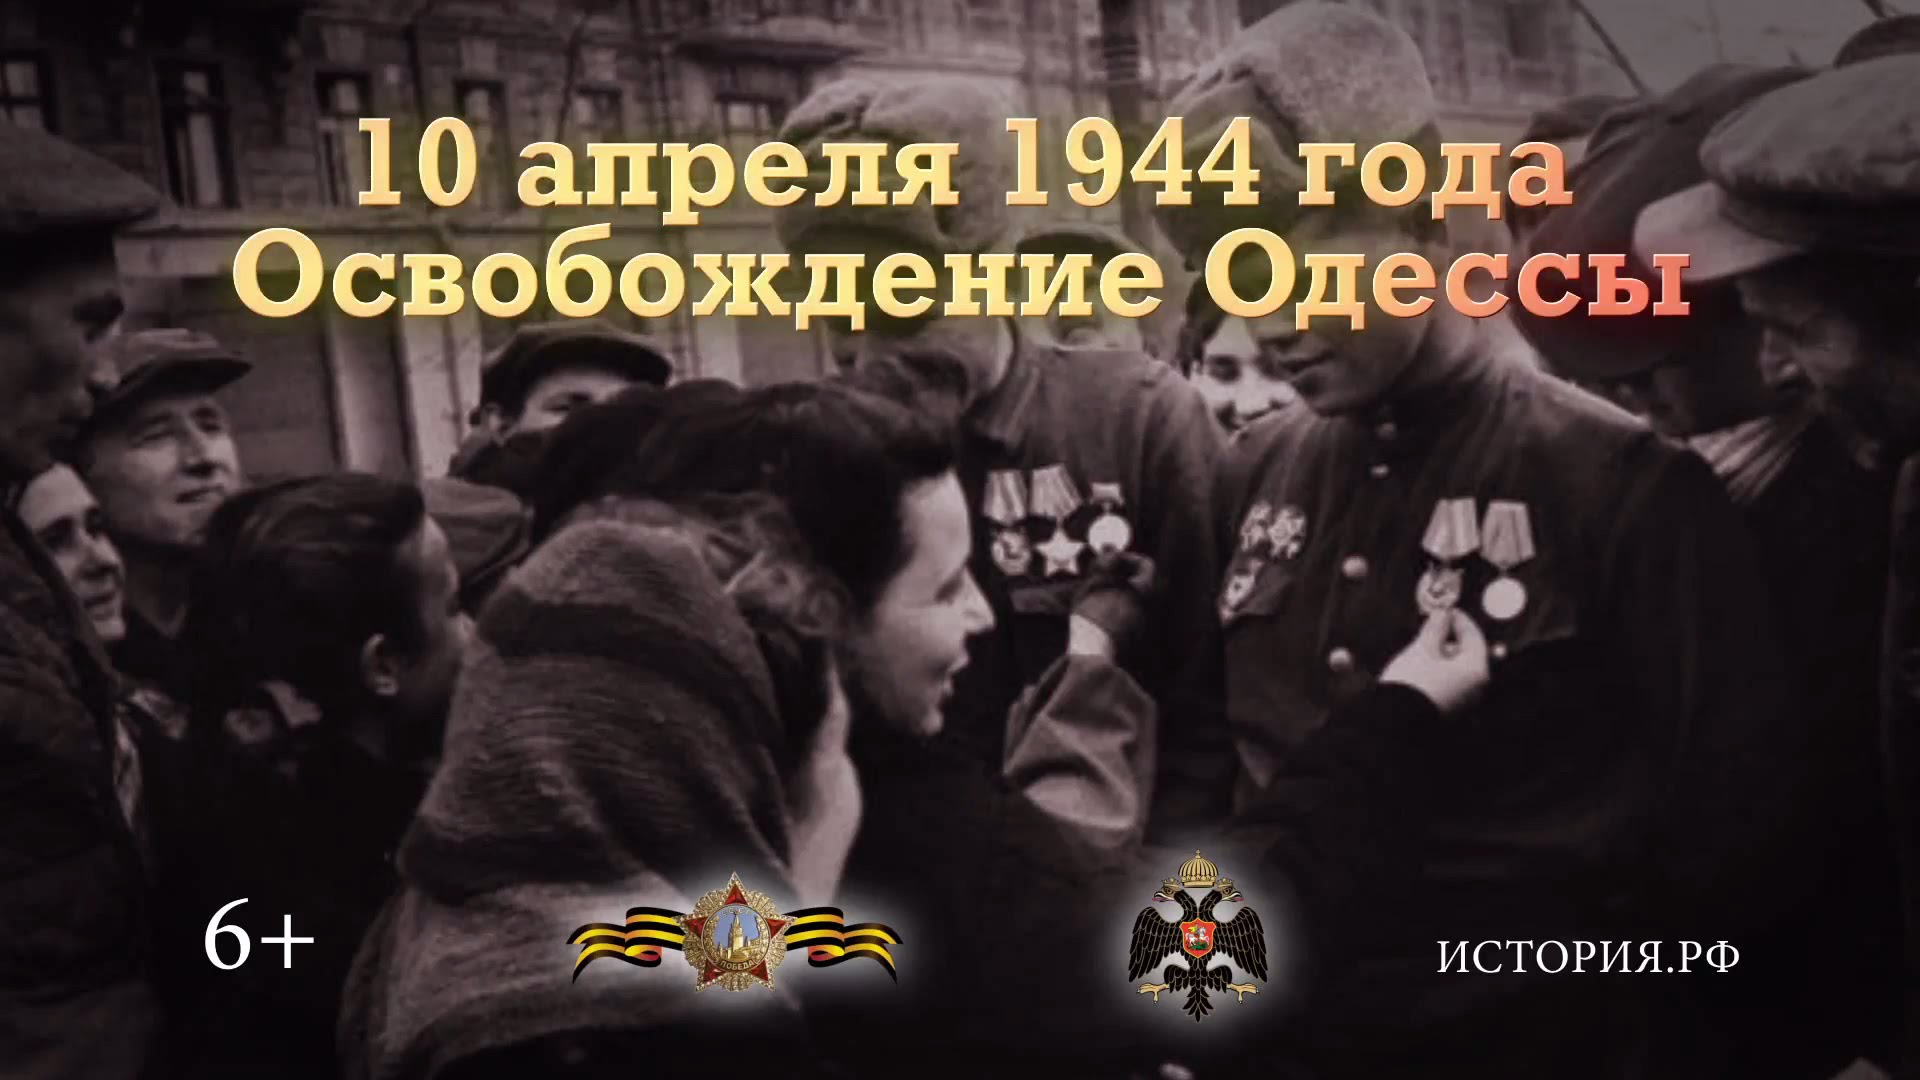 10 апреля 1944 года. Освобождение Одессы